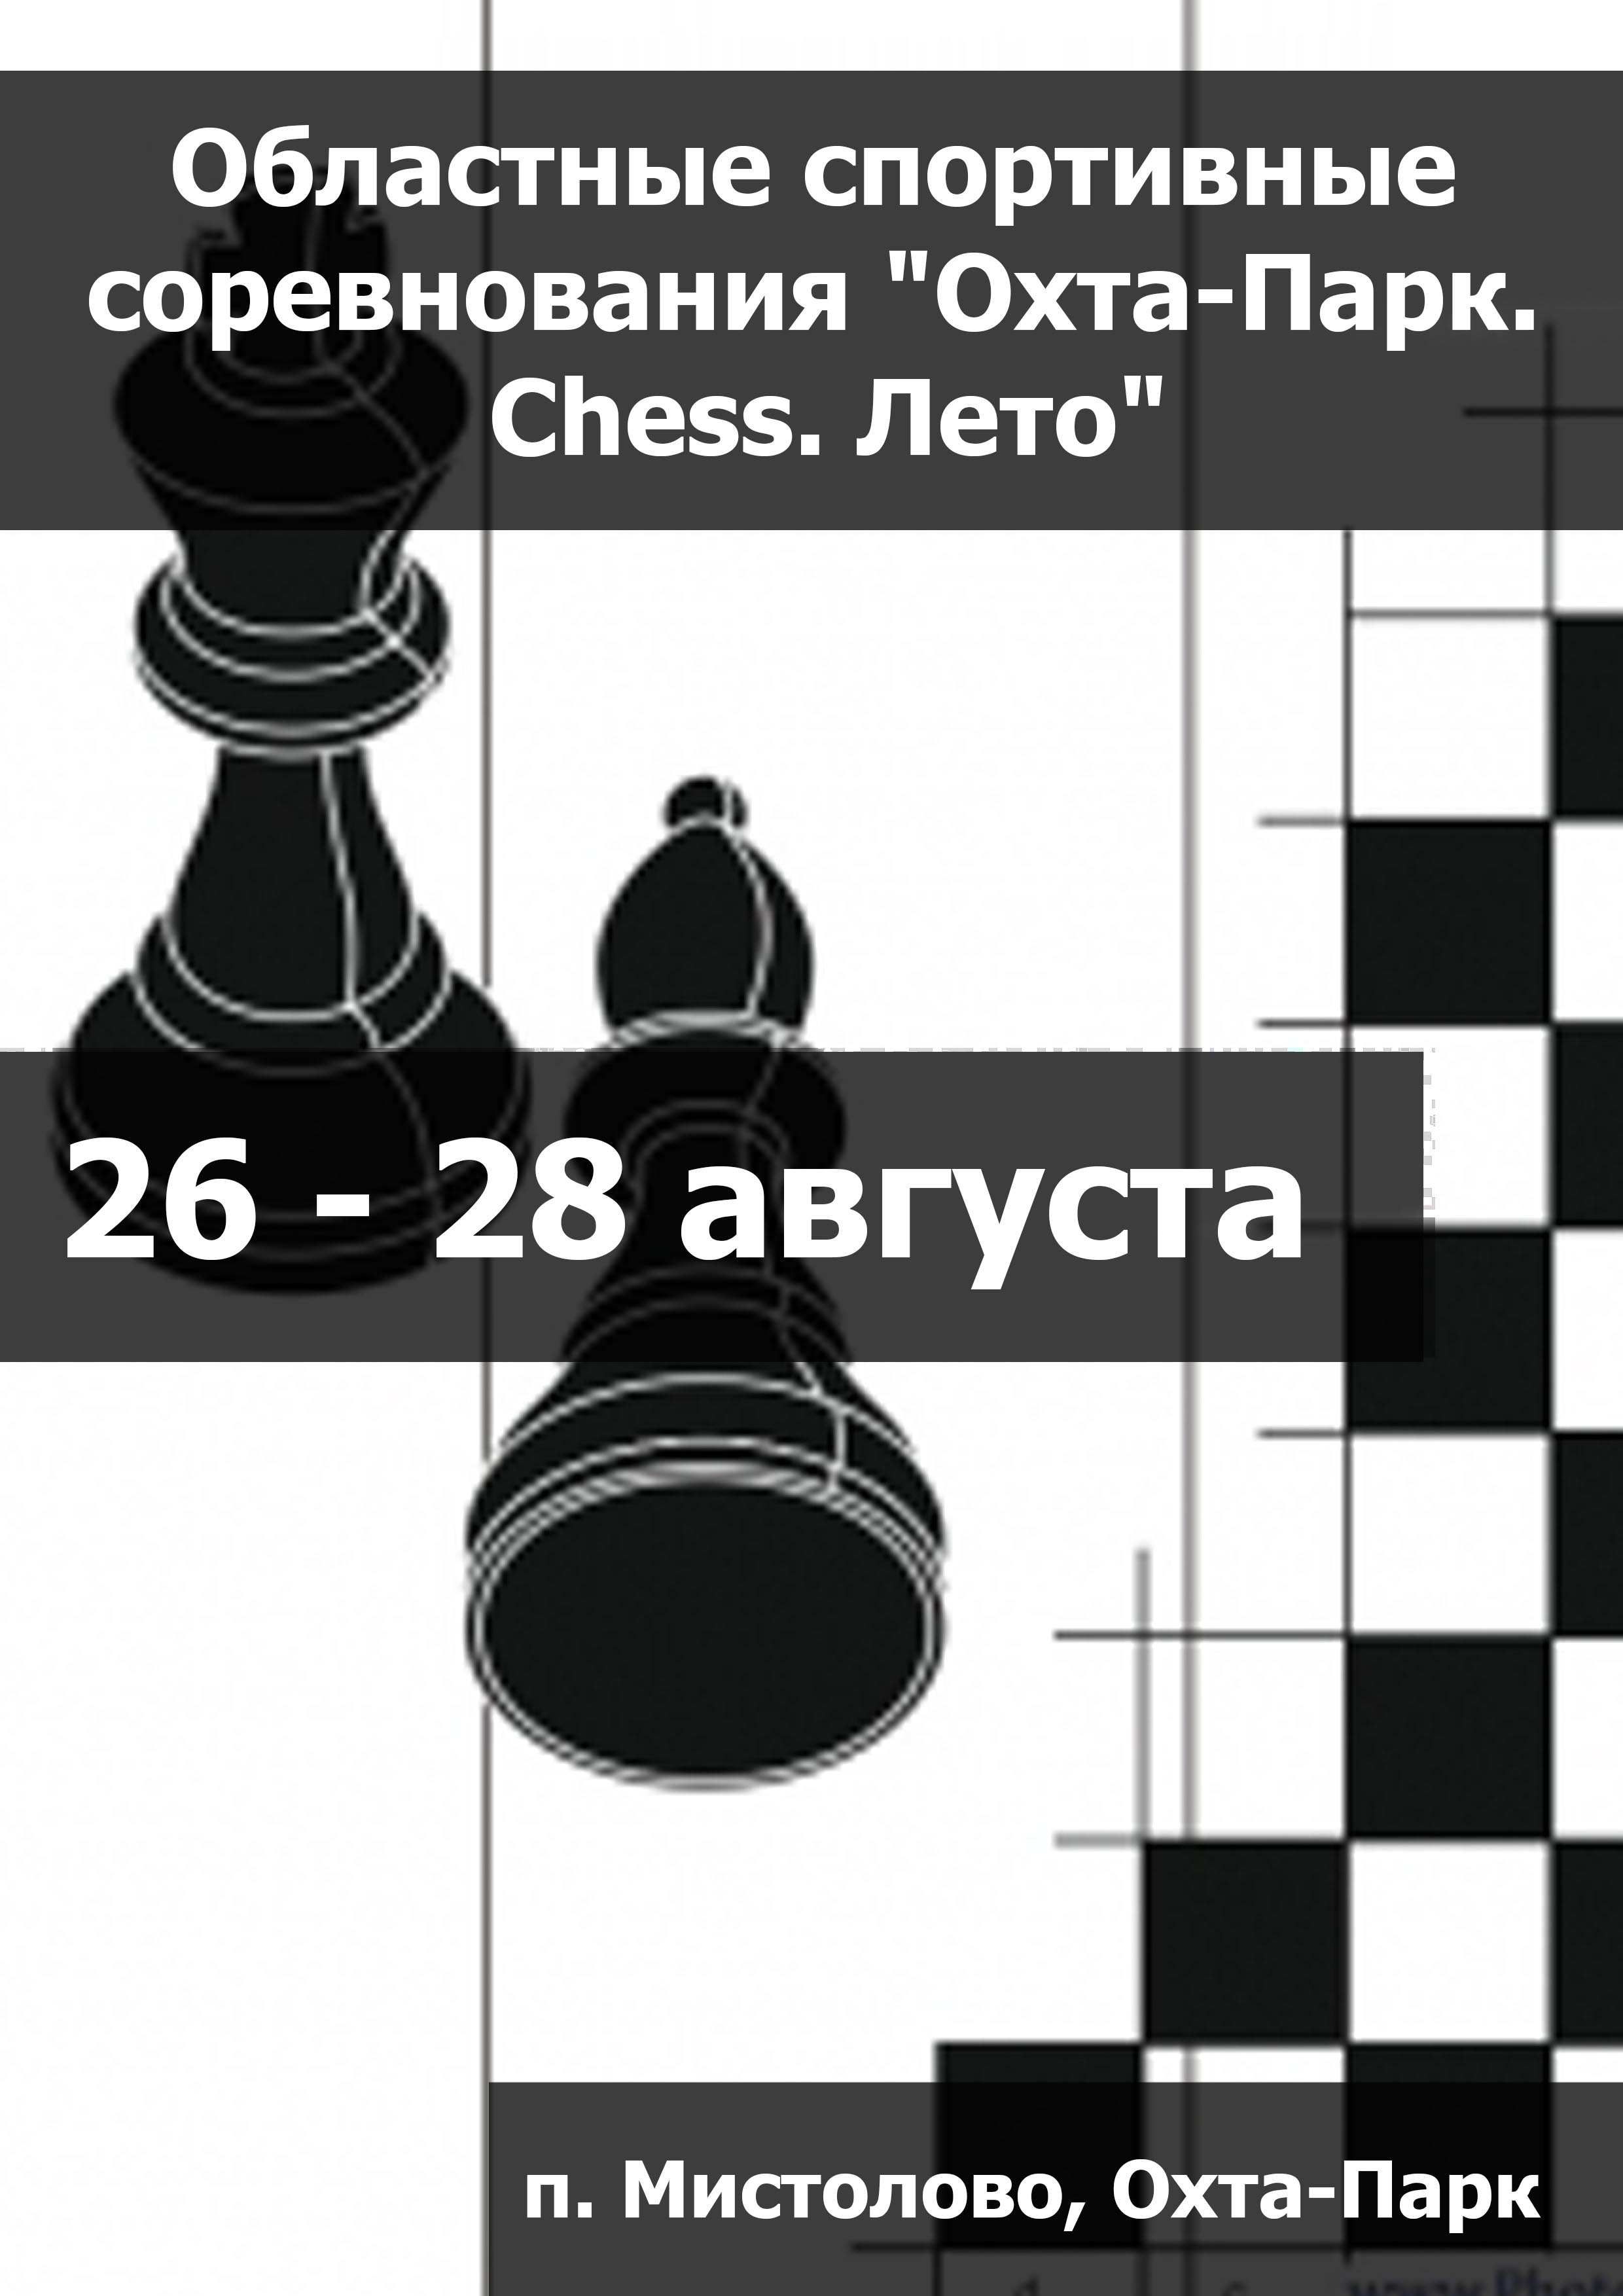 Областные спортивные соревнования "Охта-Парк. Chess. Лето" 26  augusztus
 2023  év
 